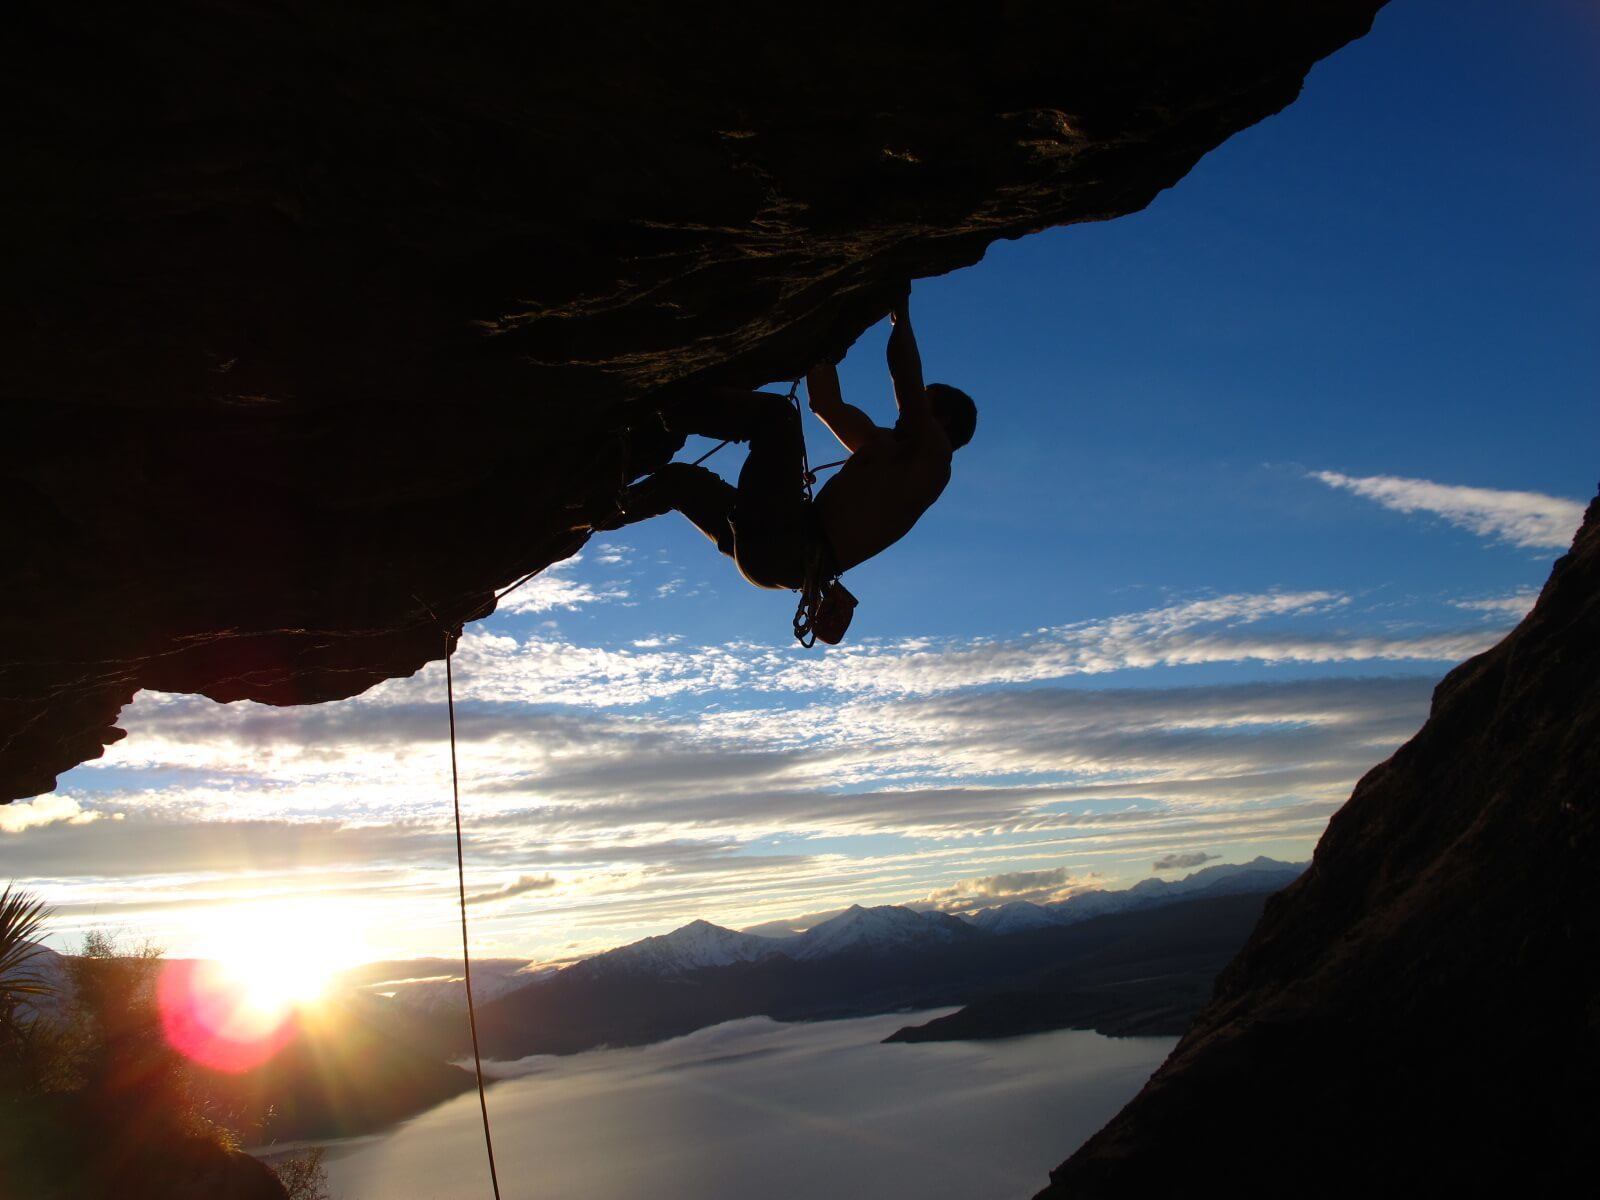 Sunset rock climbing in Queenstown, New Zealand